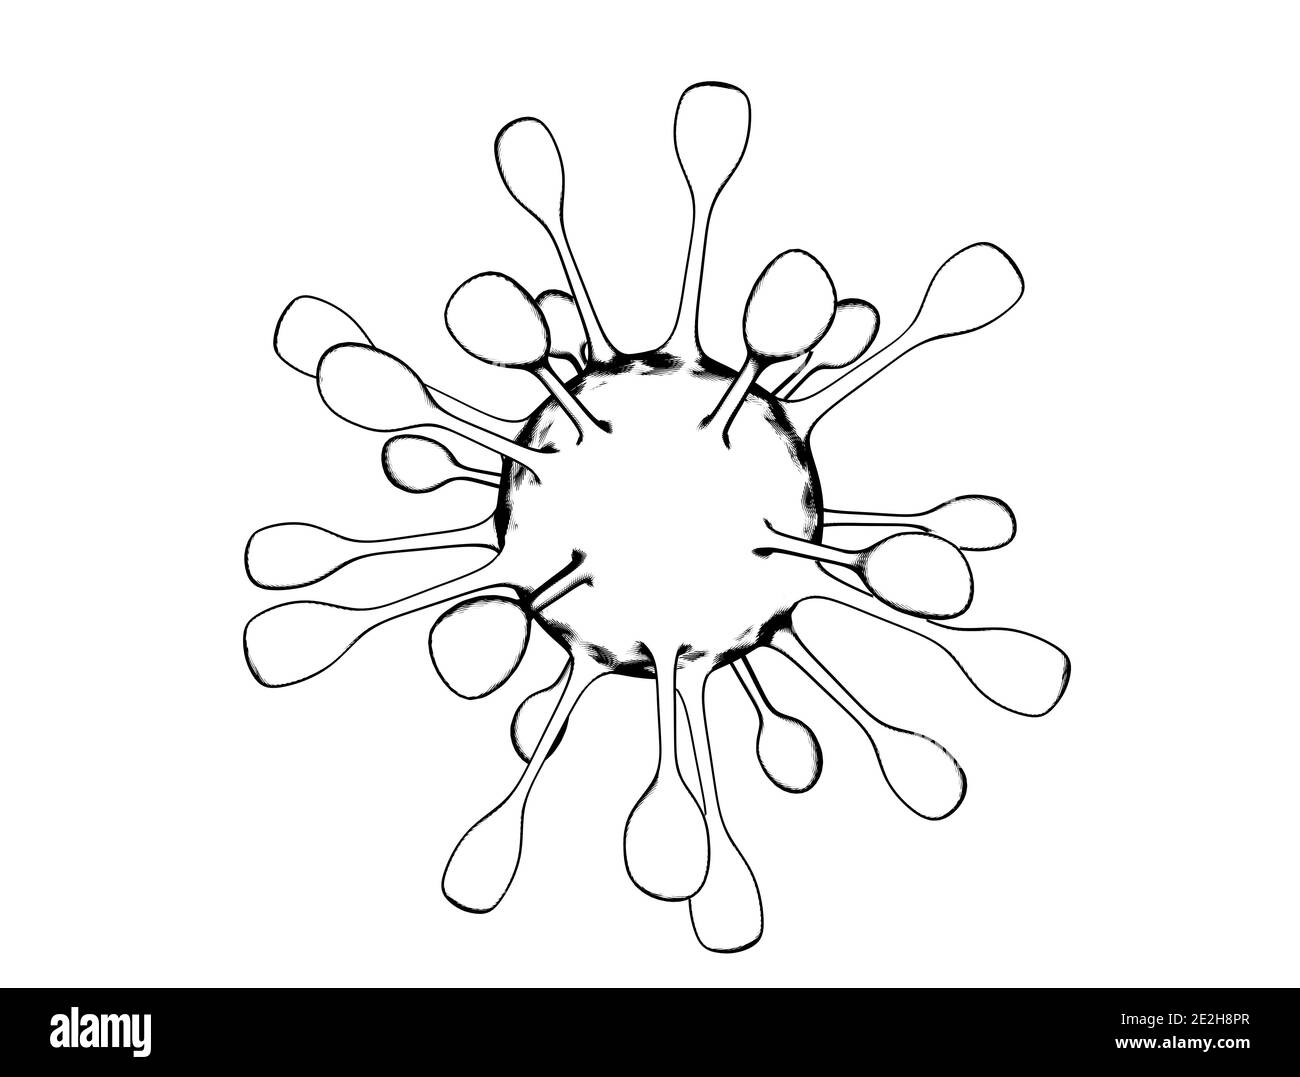 Auf weißem Hintergrund isolierte Viruszellenzeichnung. Coronavirus Covid-19 3D-Illustration Stockfoto